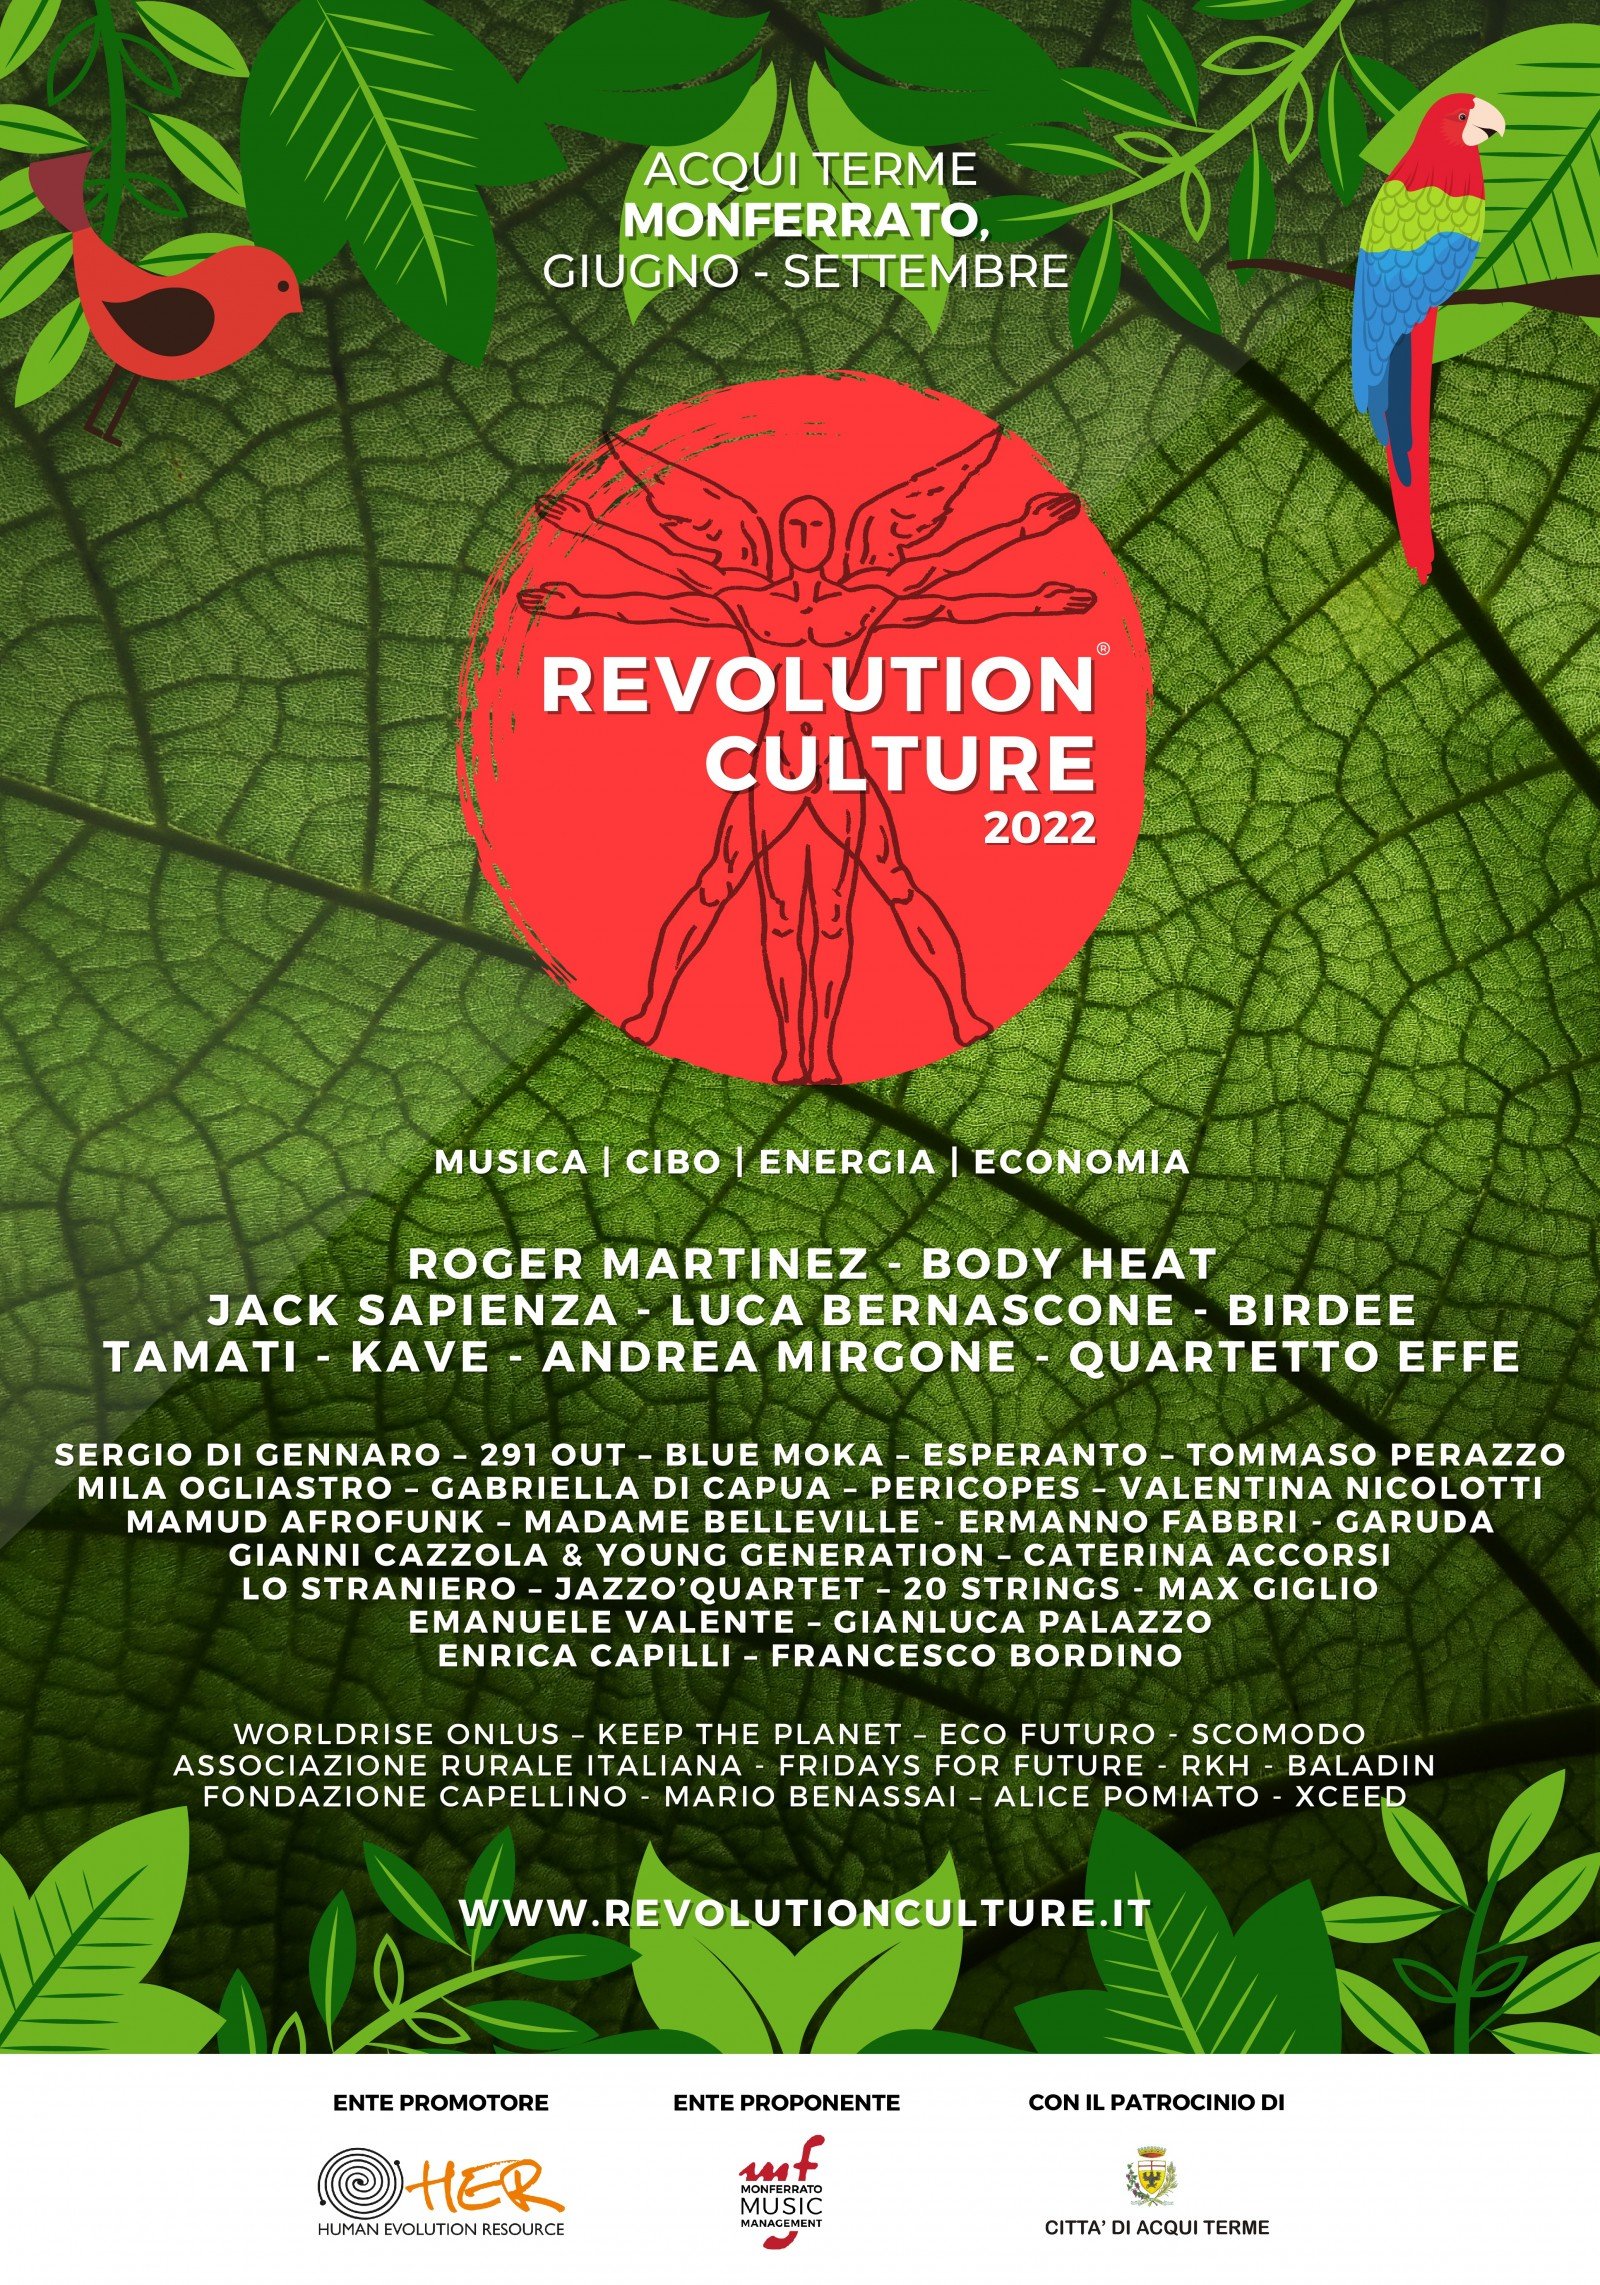 Venerdì 26 agosto ad Acqui la musica de “Lo Straniero” per “Revolution Culture”